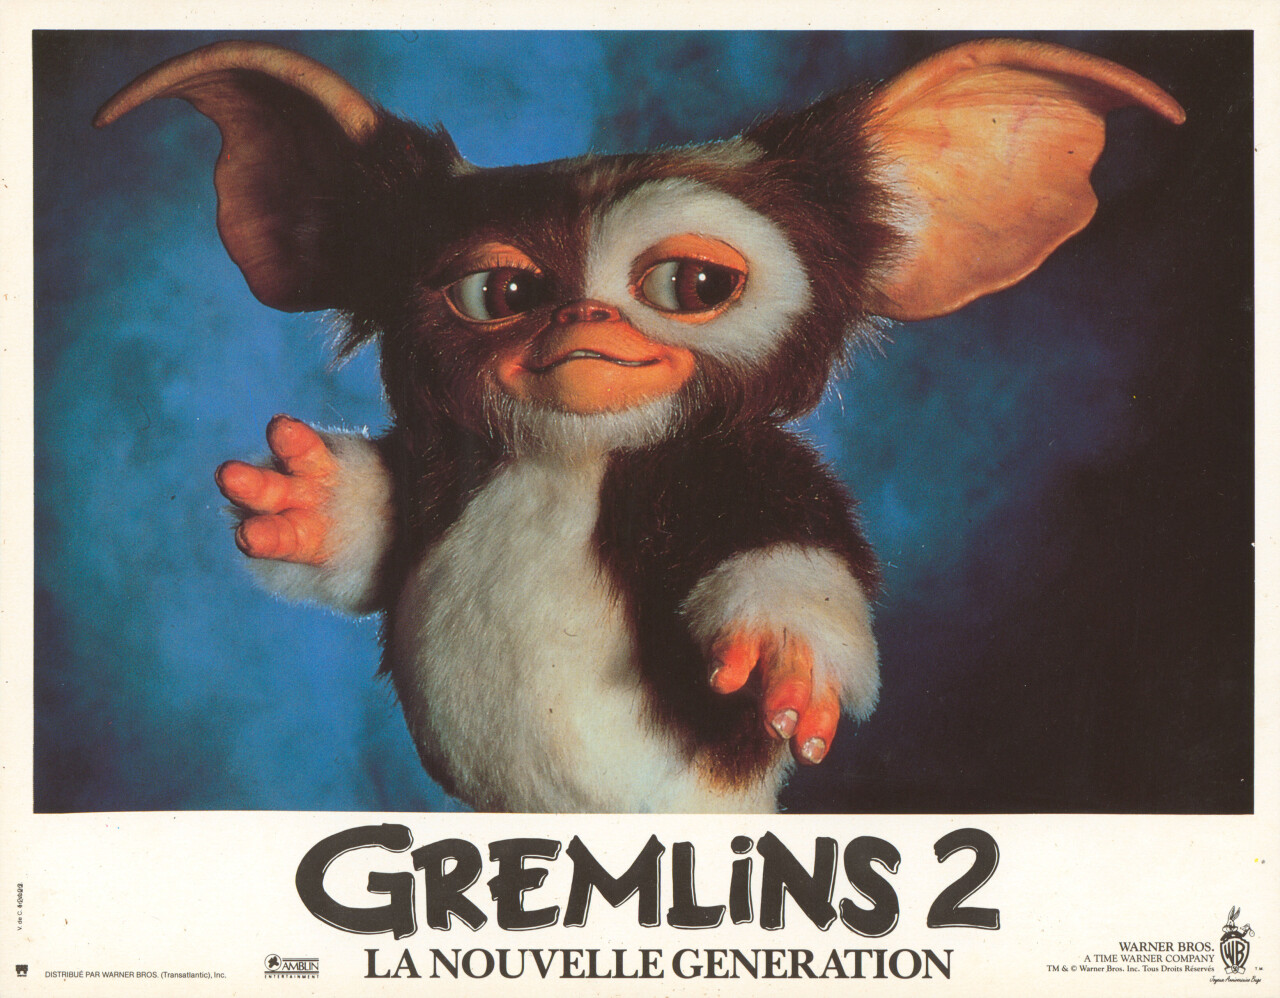 Гремлины 2: Новенькая партия (Gremlins 2 The New Batch, 1990), режиссёр Джо Данте, французский постер к фильму (ужасы, 1990 год)